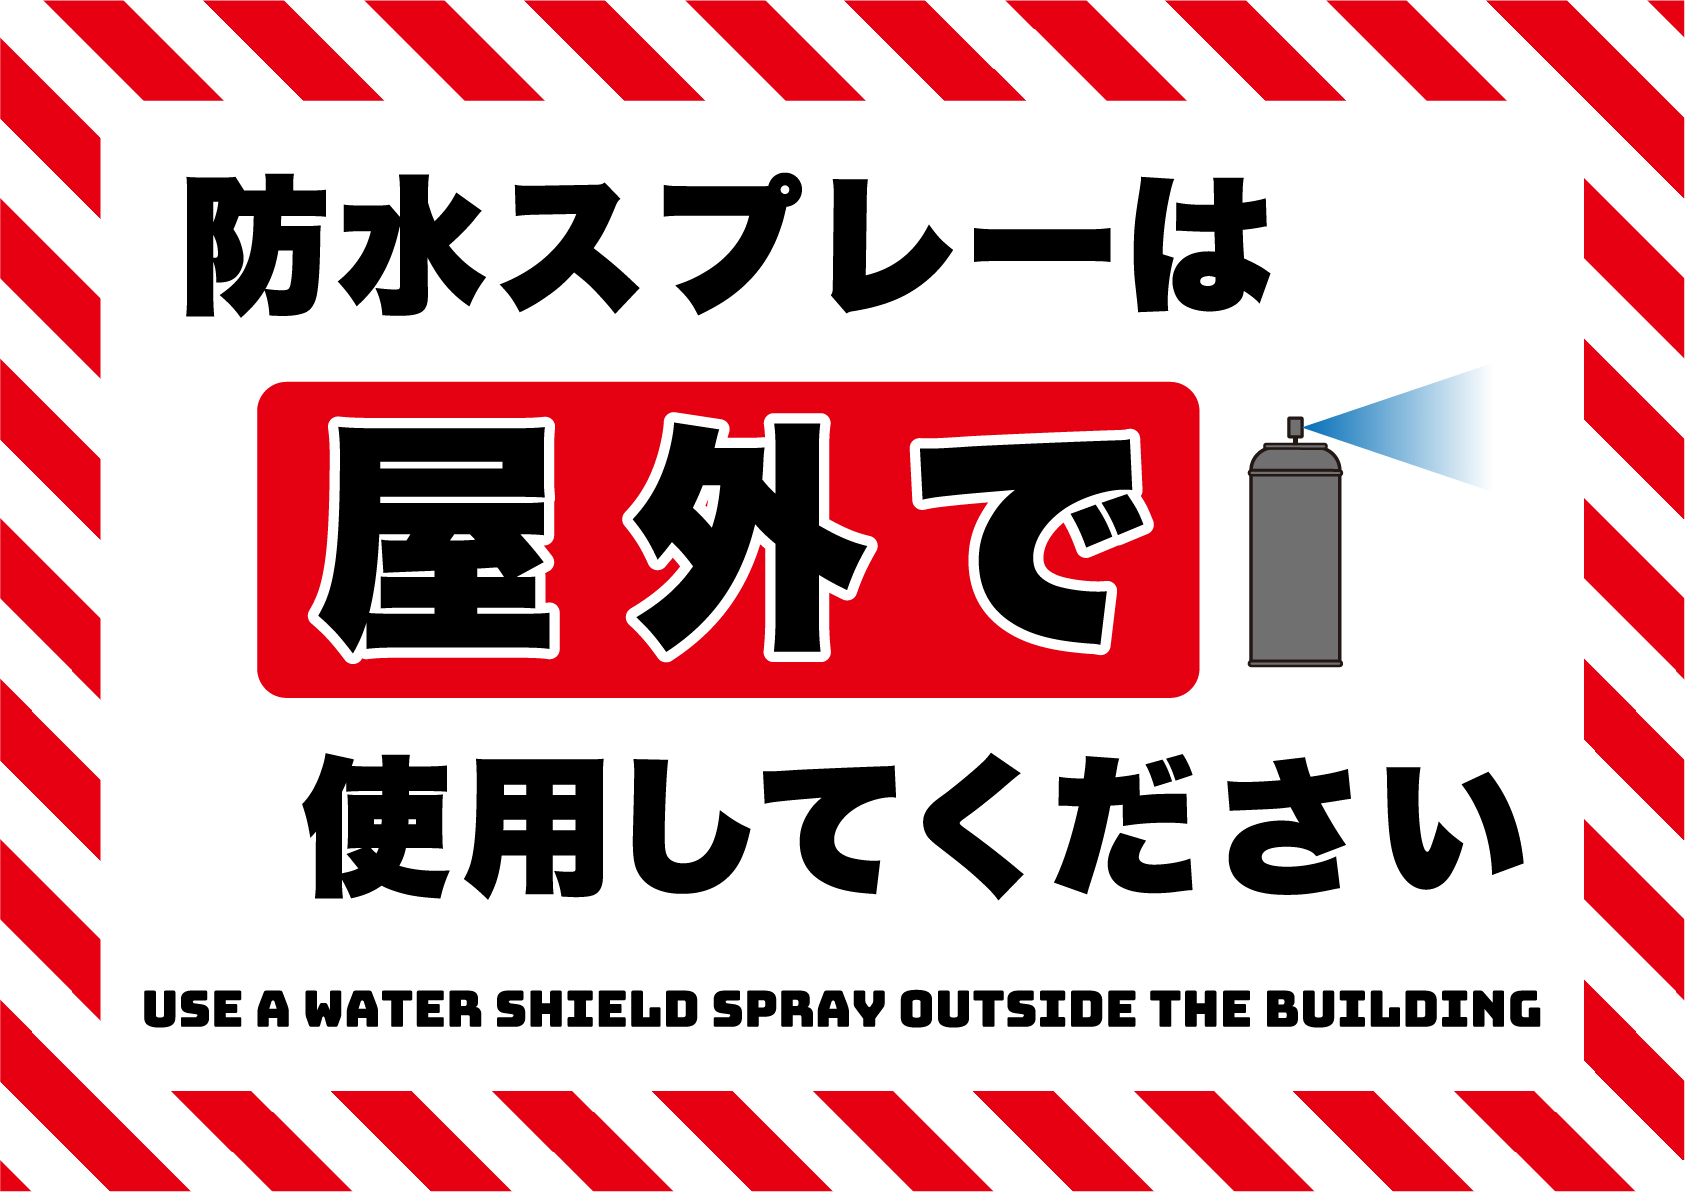 防水スプレーは屋外で使用してくださいの張り紙